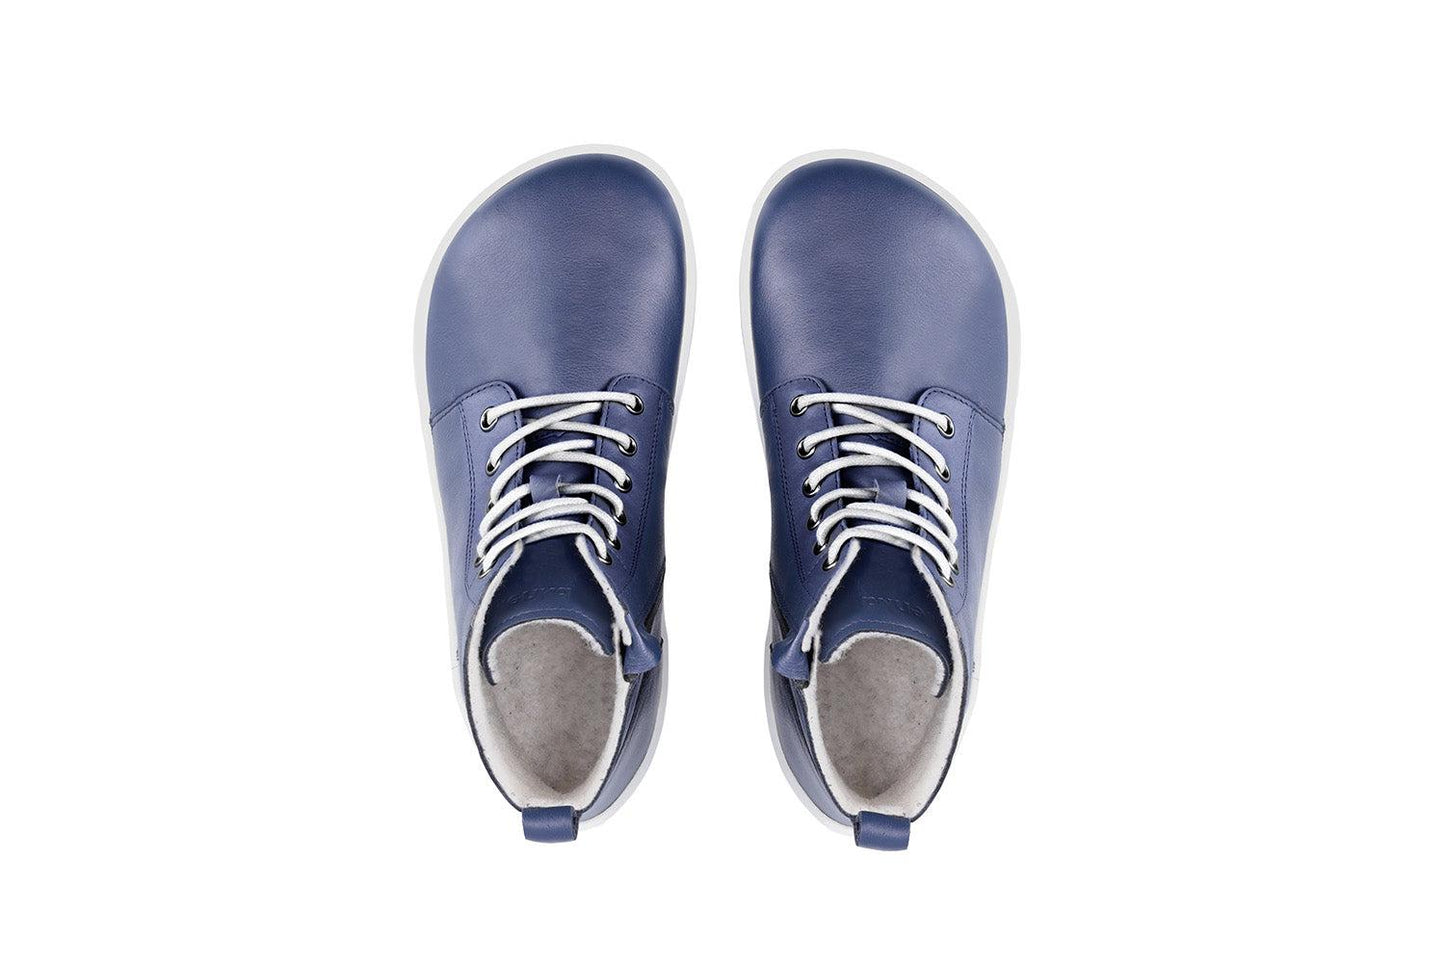 Zapatos de invierno barefoot Be Lenka Atlas - Navy Blue